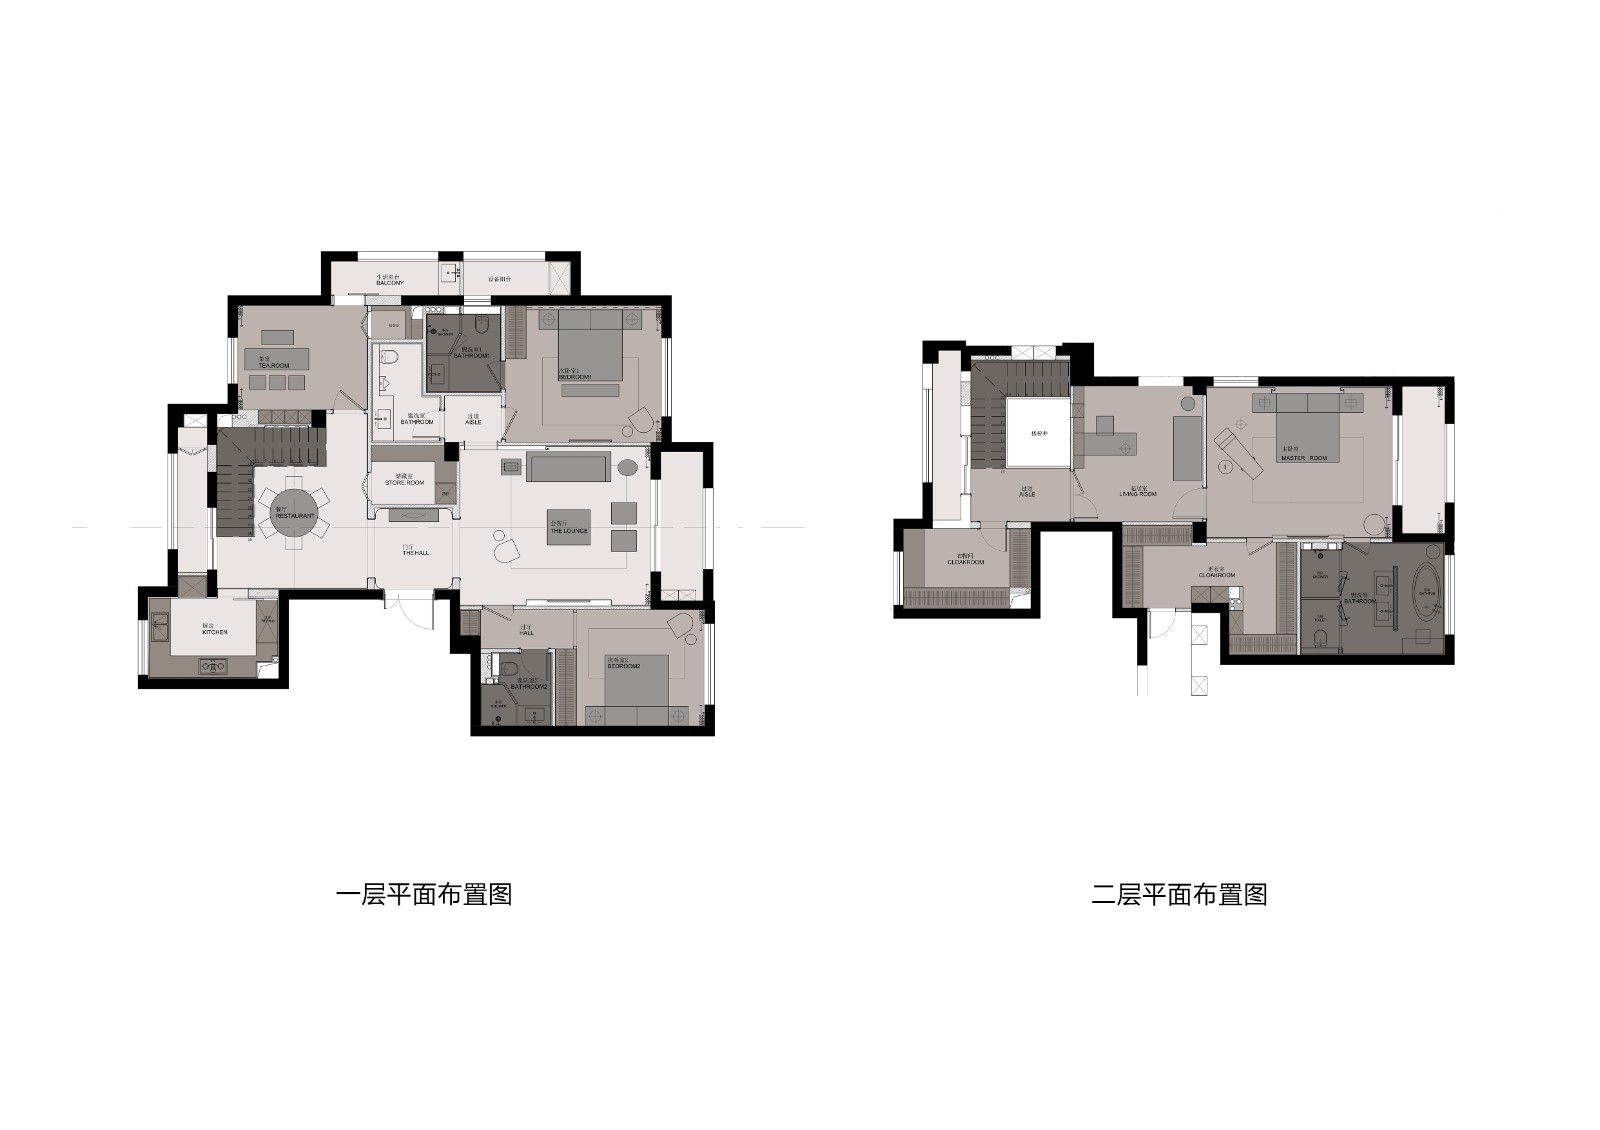 110现代三房装修效果图,静谧悠长的家居氛围装修案例效果图-美广网